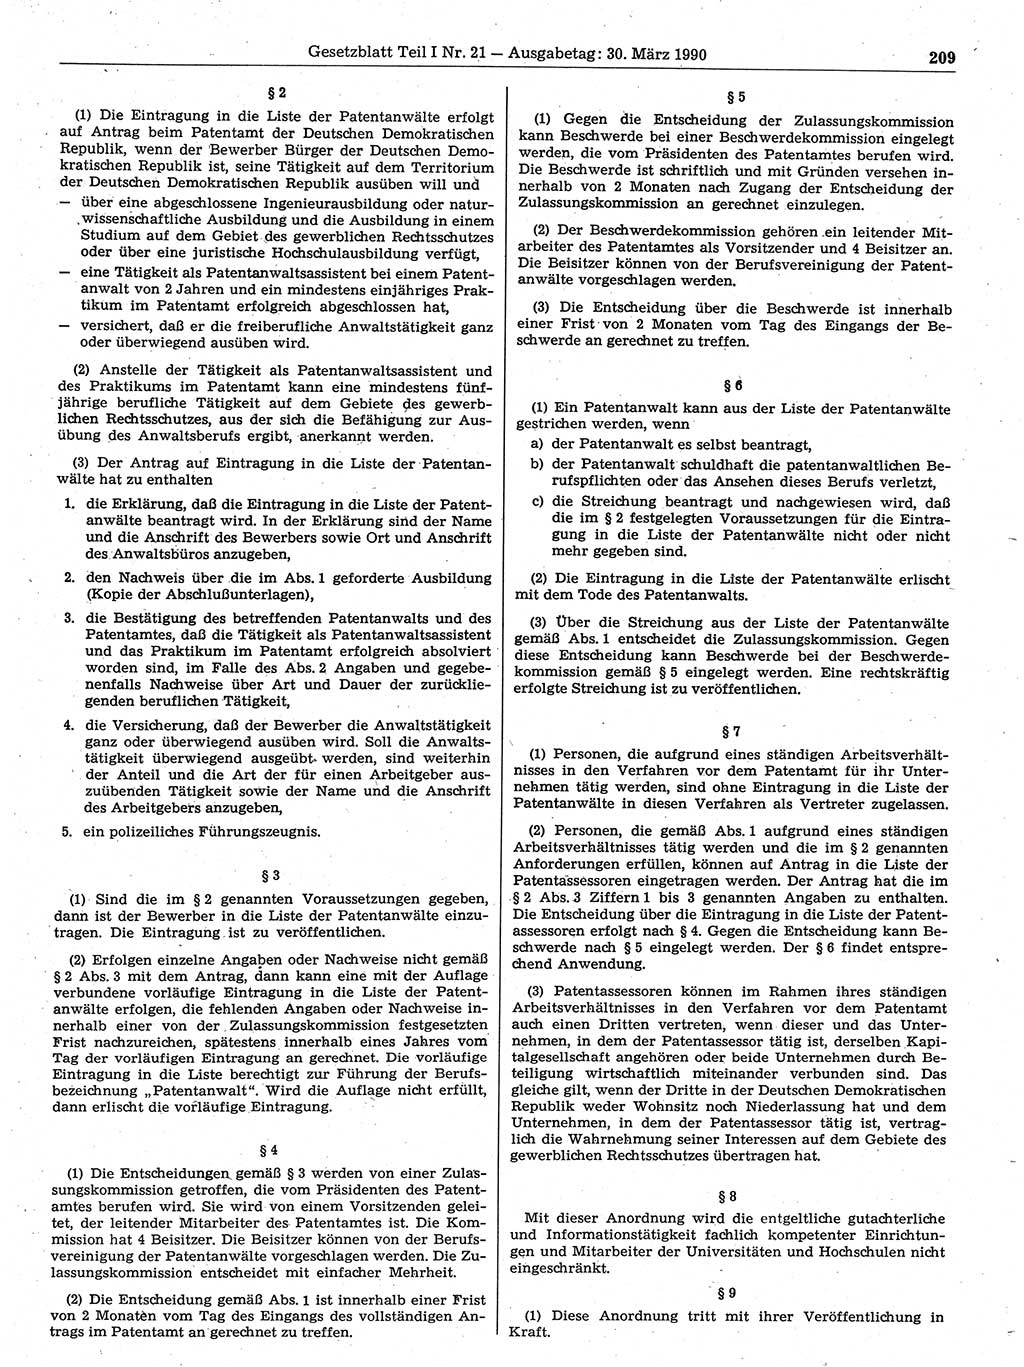 Gesetzblatt (GBl.) der Deutschen Demokratischen Republik (DDR) Teil Ⅰ 1990, Seite 209 (GBl. DDR Ⅰ 1990, S. 209)